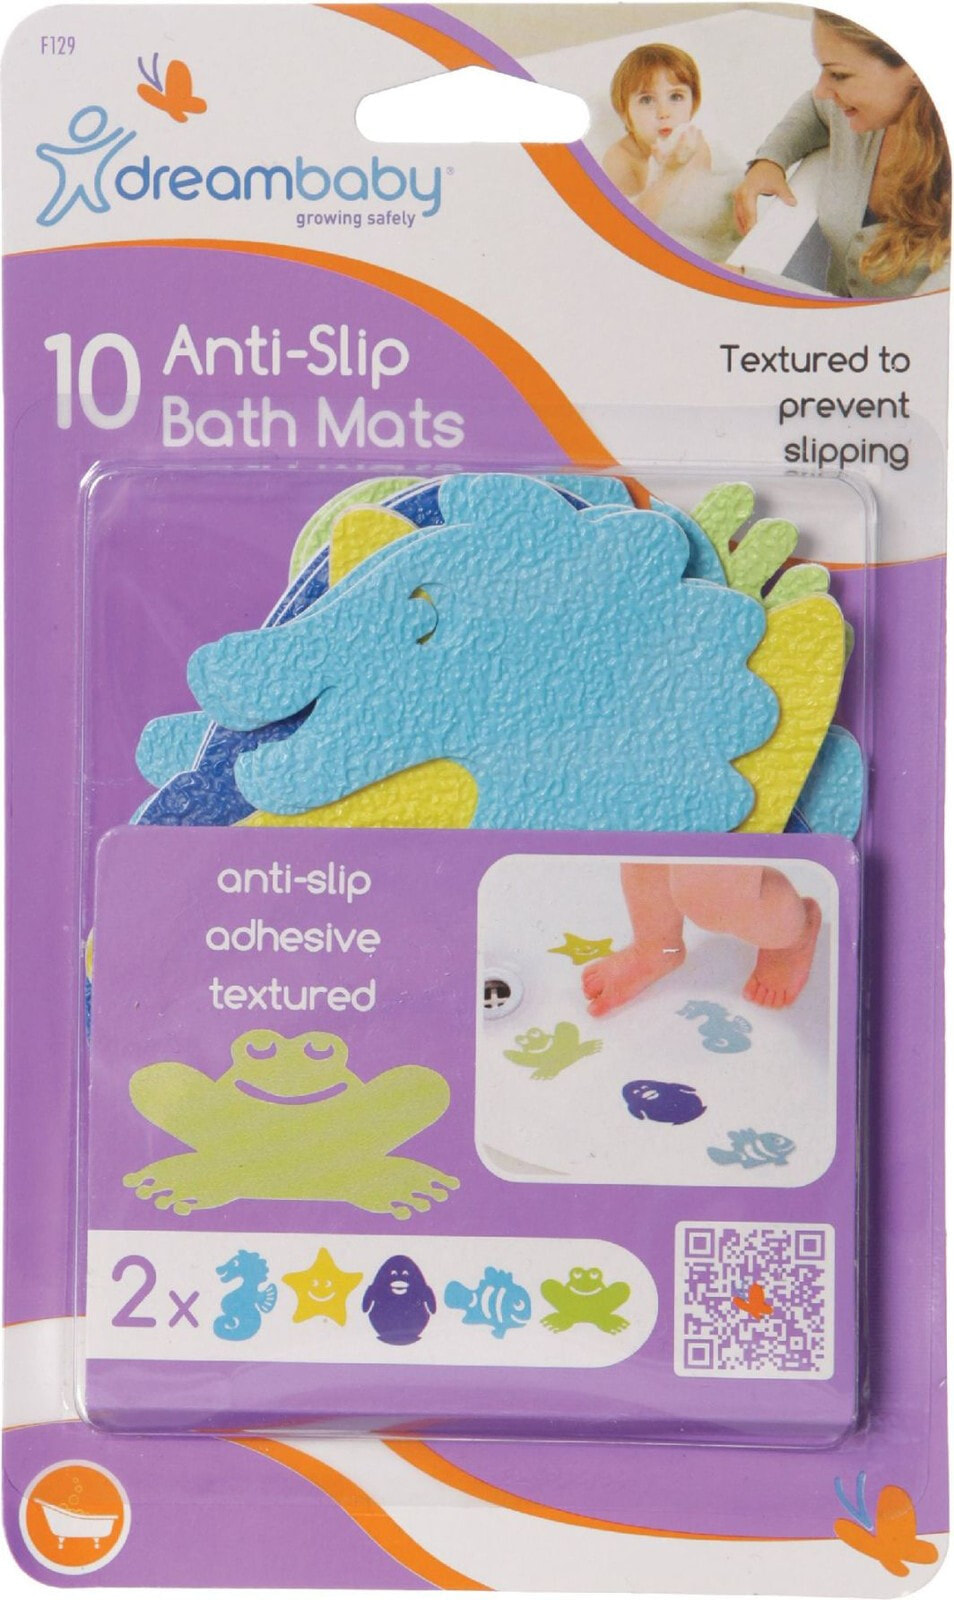 Dreambaby Anti-slip mats (DRE000020)